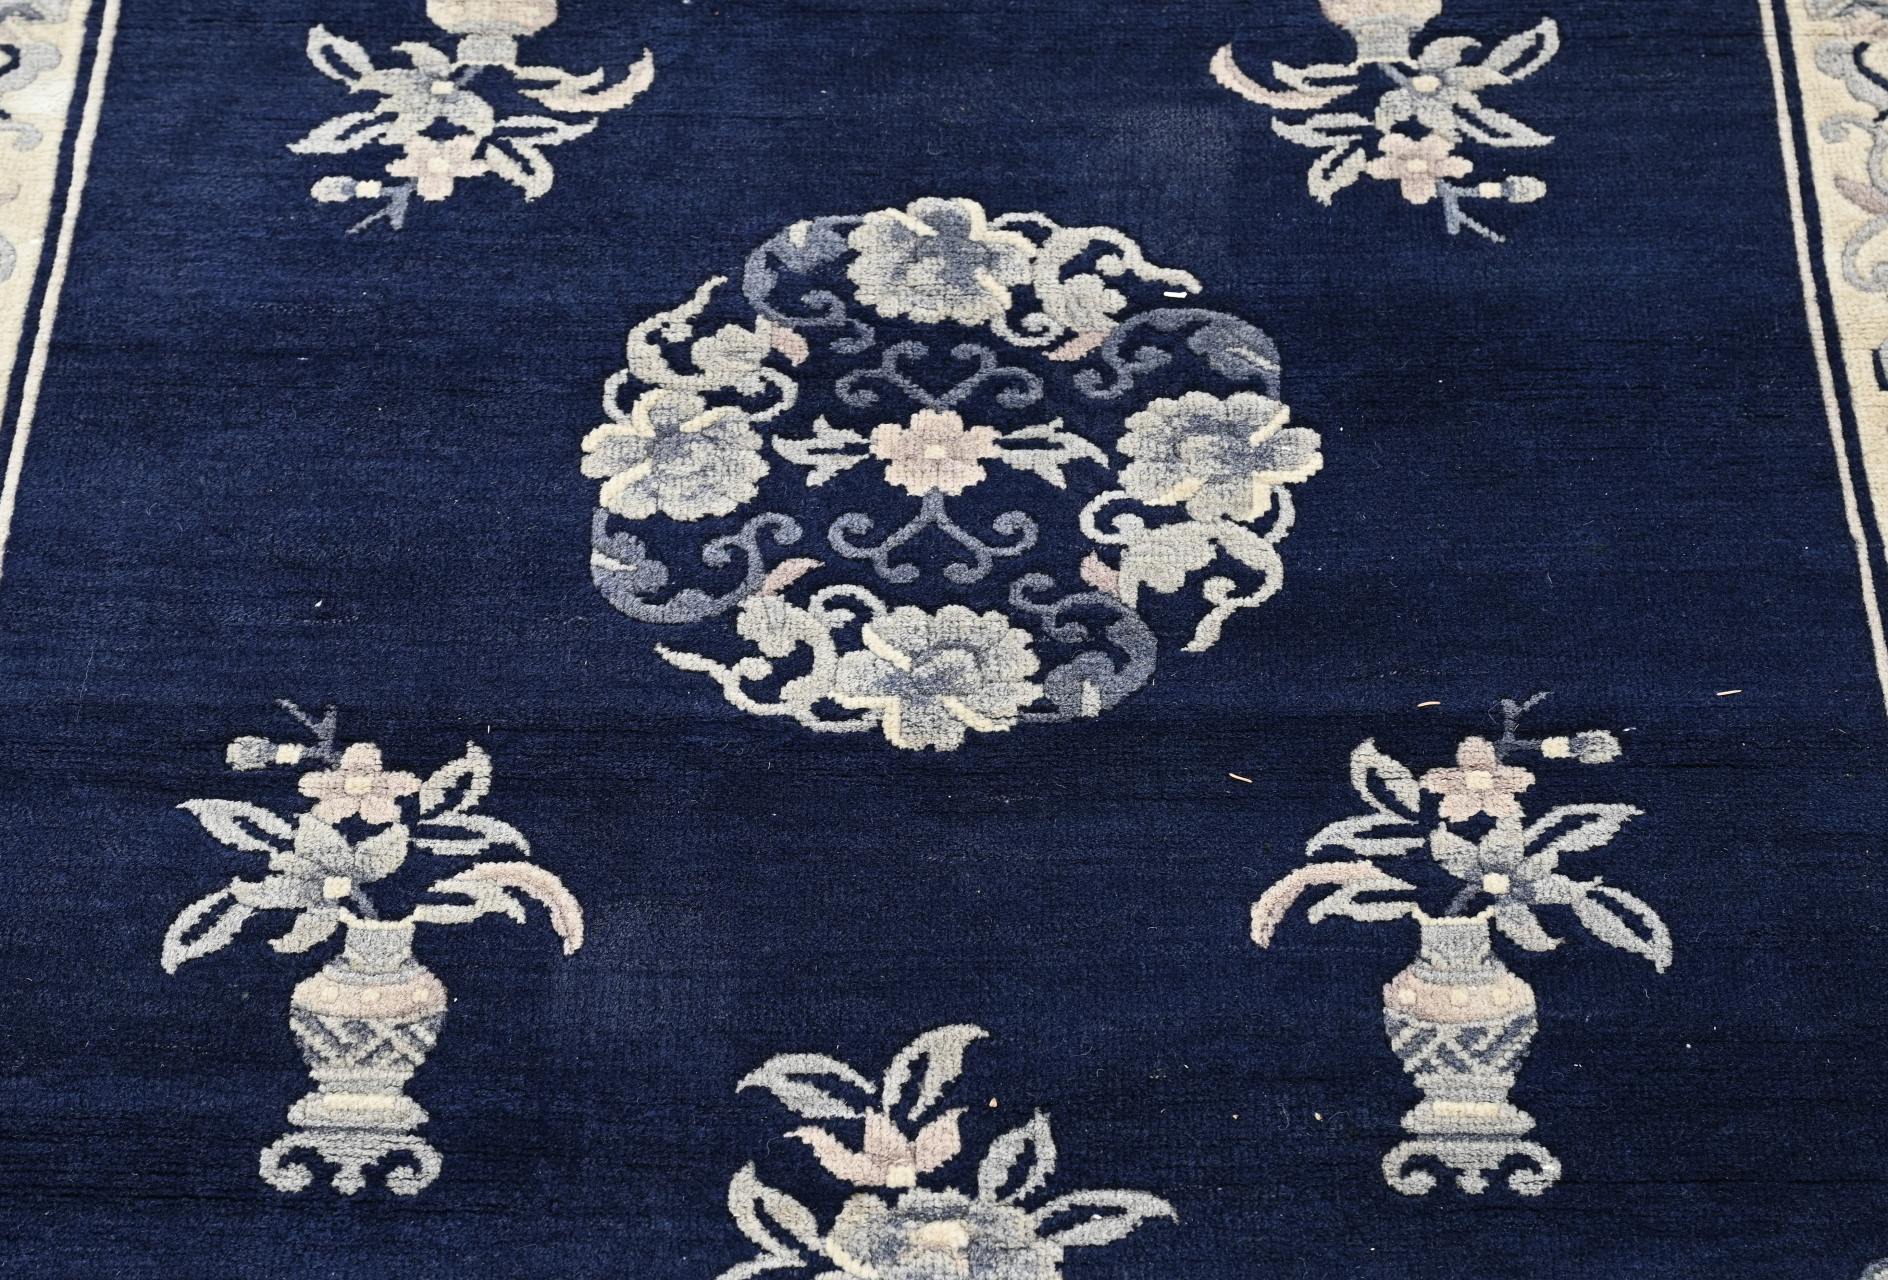 Chinese carpet (Tibet) - Image 2 of 3